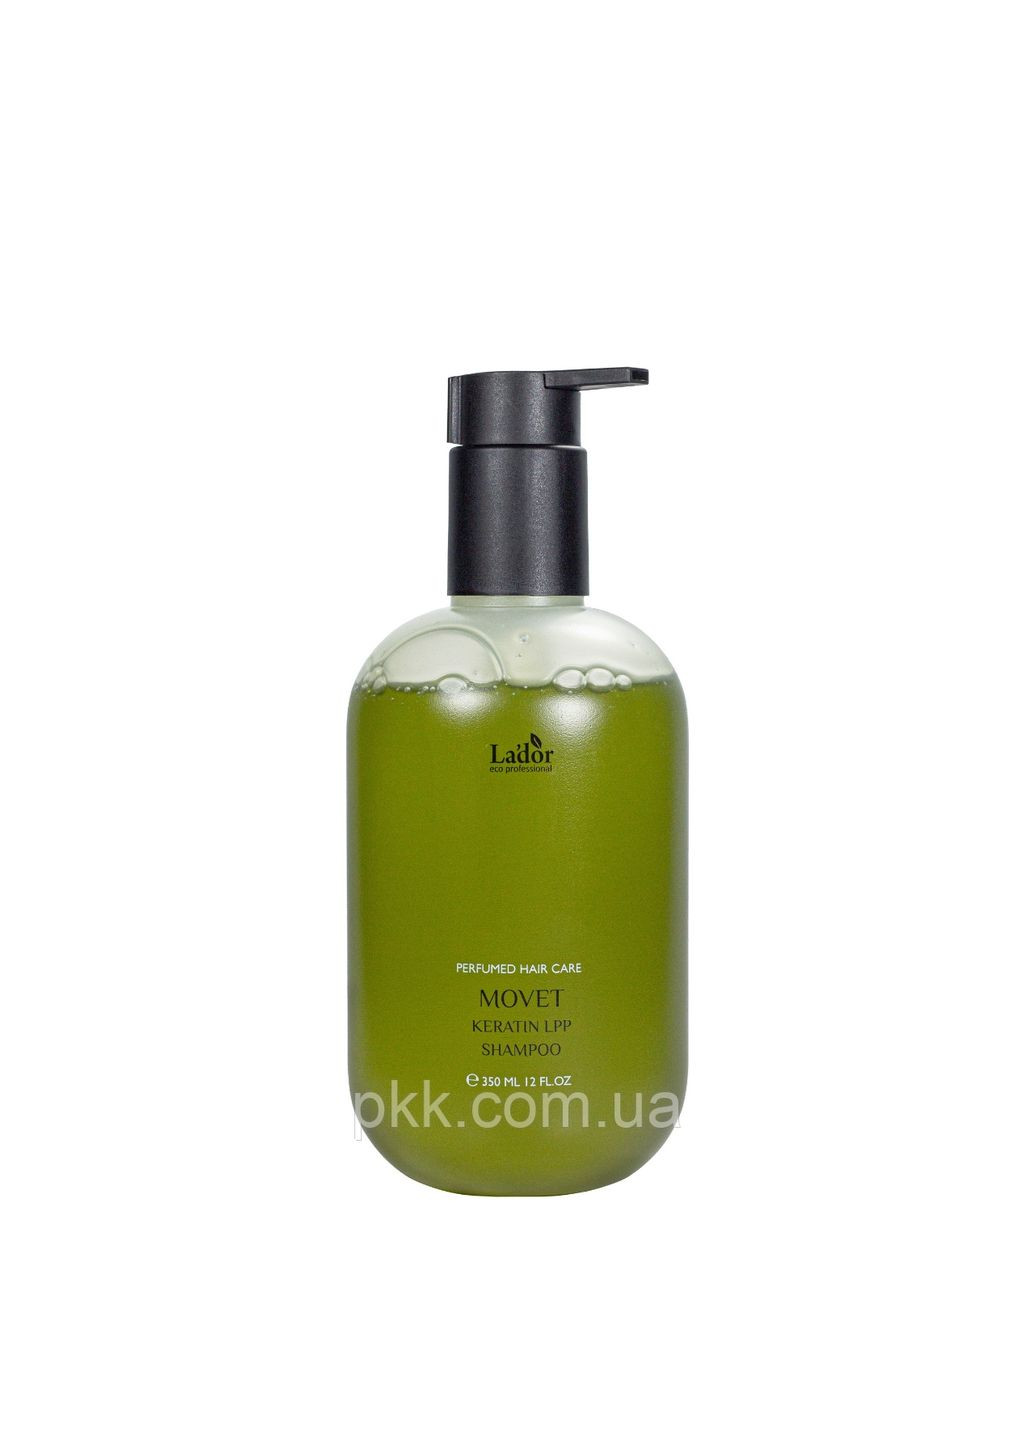 Восстанавливающий шампунь для поврежденных волос Keratin LPP Shampoo Movet LADOR (279326093)